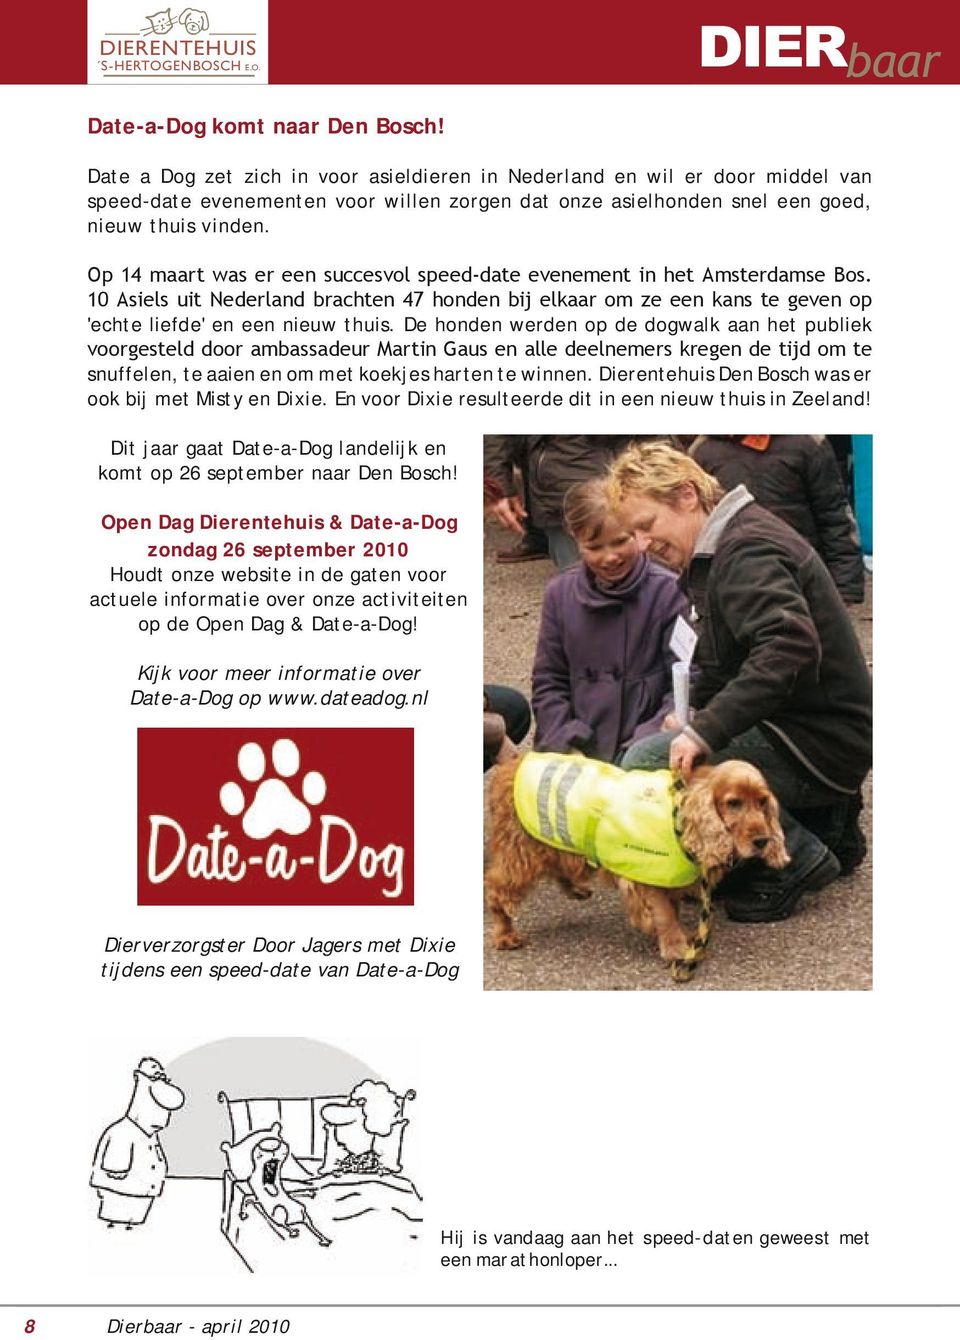 Op 14 maart was er een succesvol speed-date evenement in het Amsterdamse Bos. 10 Asiels uit Nederland brachten 47 honden bij elkaar om ze een kans te geven op 'echte liefde' en een nieuw thuis.